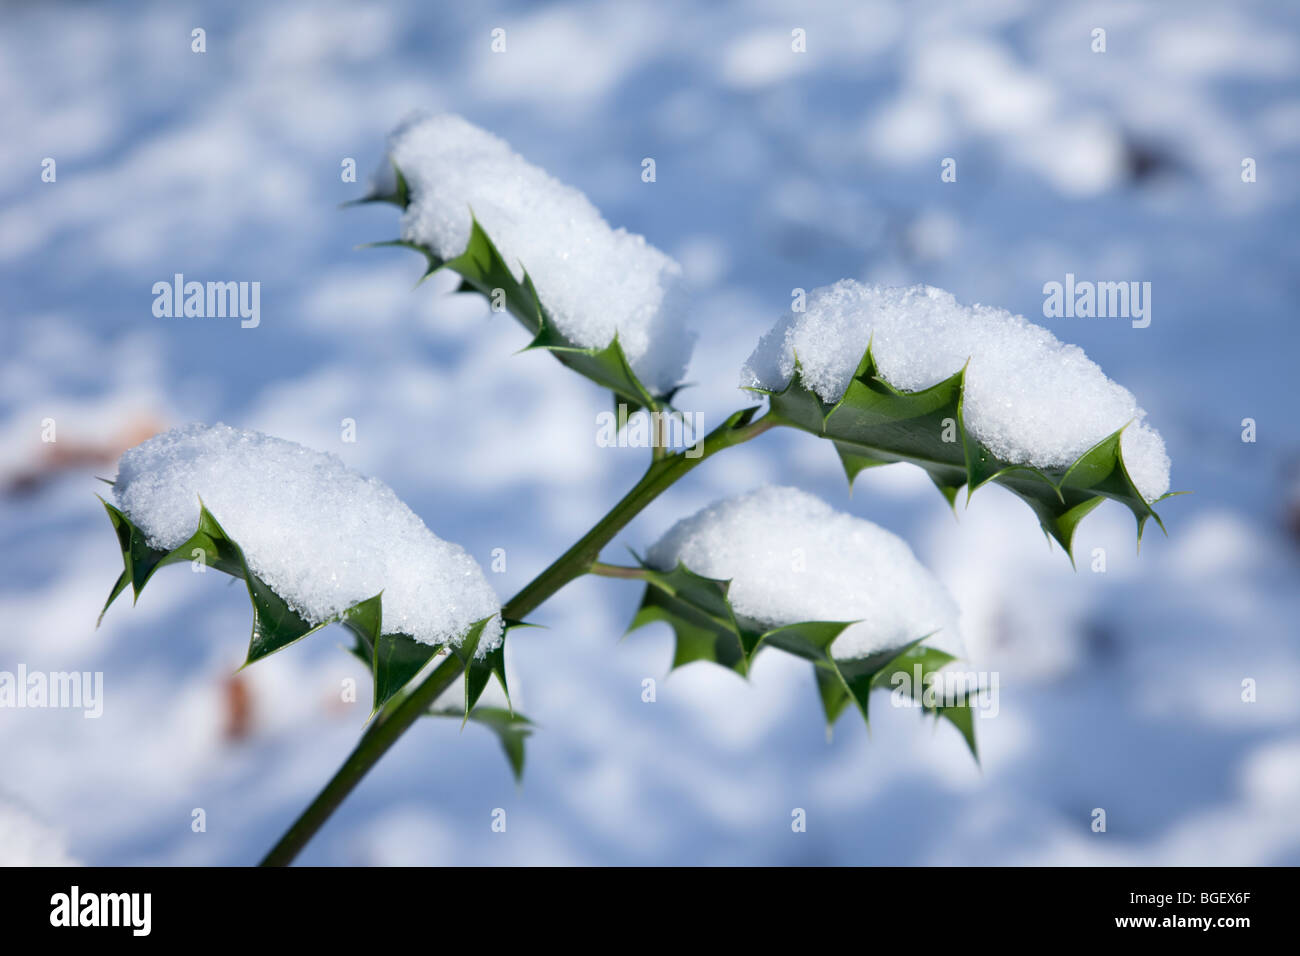 Close-up de el acebo (Ilex aquifolium) deja cubierto de nieve en invierno. Inglaterra, Reino Unido (Gran Bretaña). Foto de stock